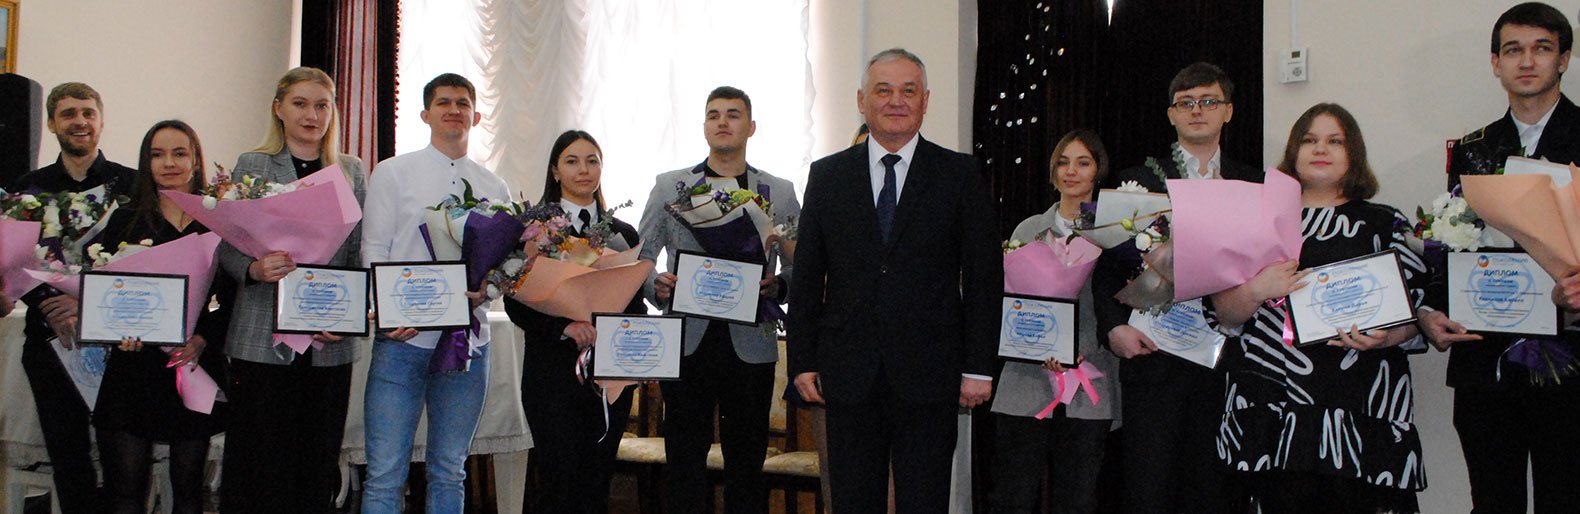 Лучших белгородских студентов отметили стипендией фонда «Поколение» Андрея Скоча